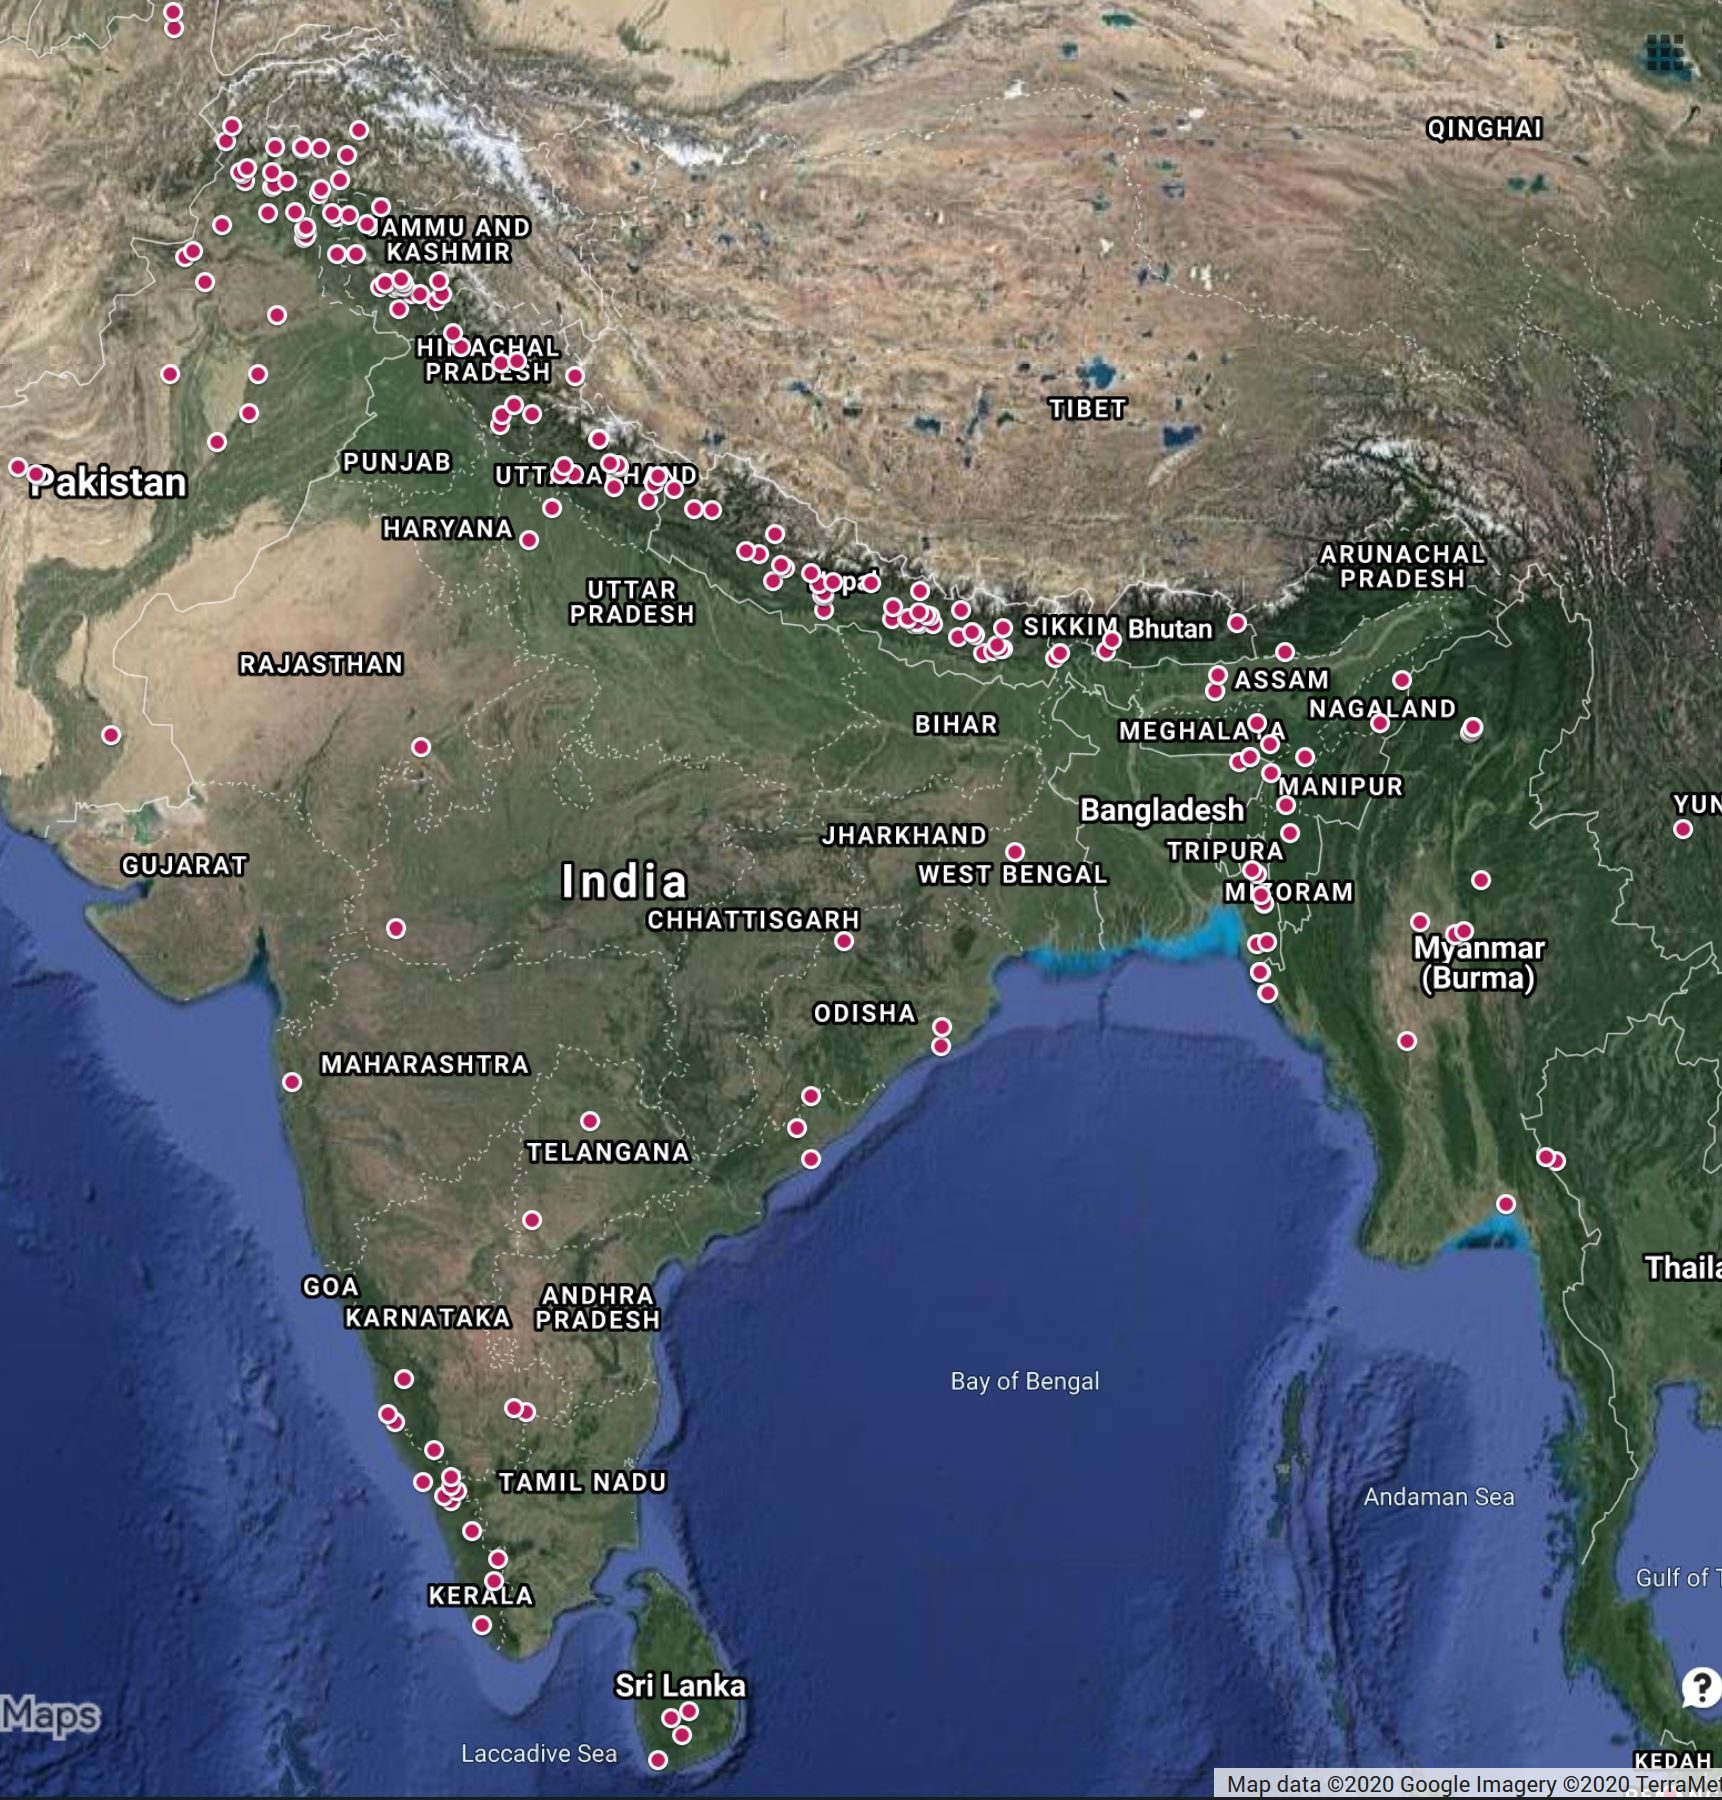 2019 fatal landslides in South Asia